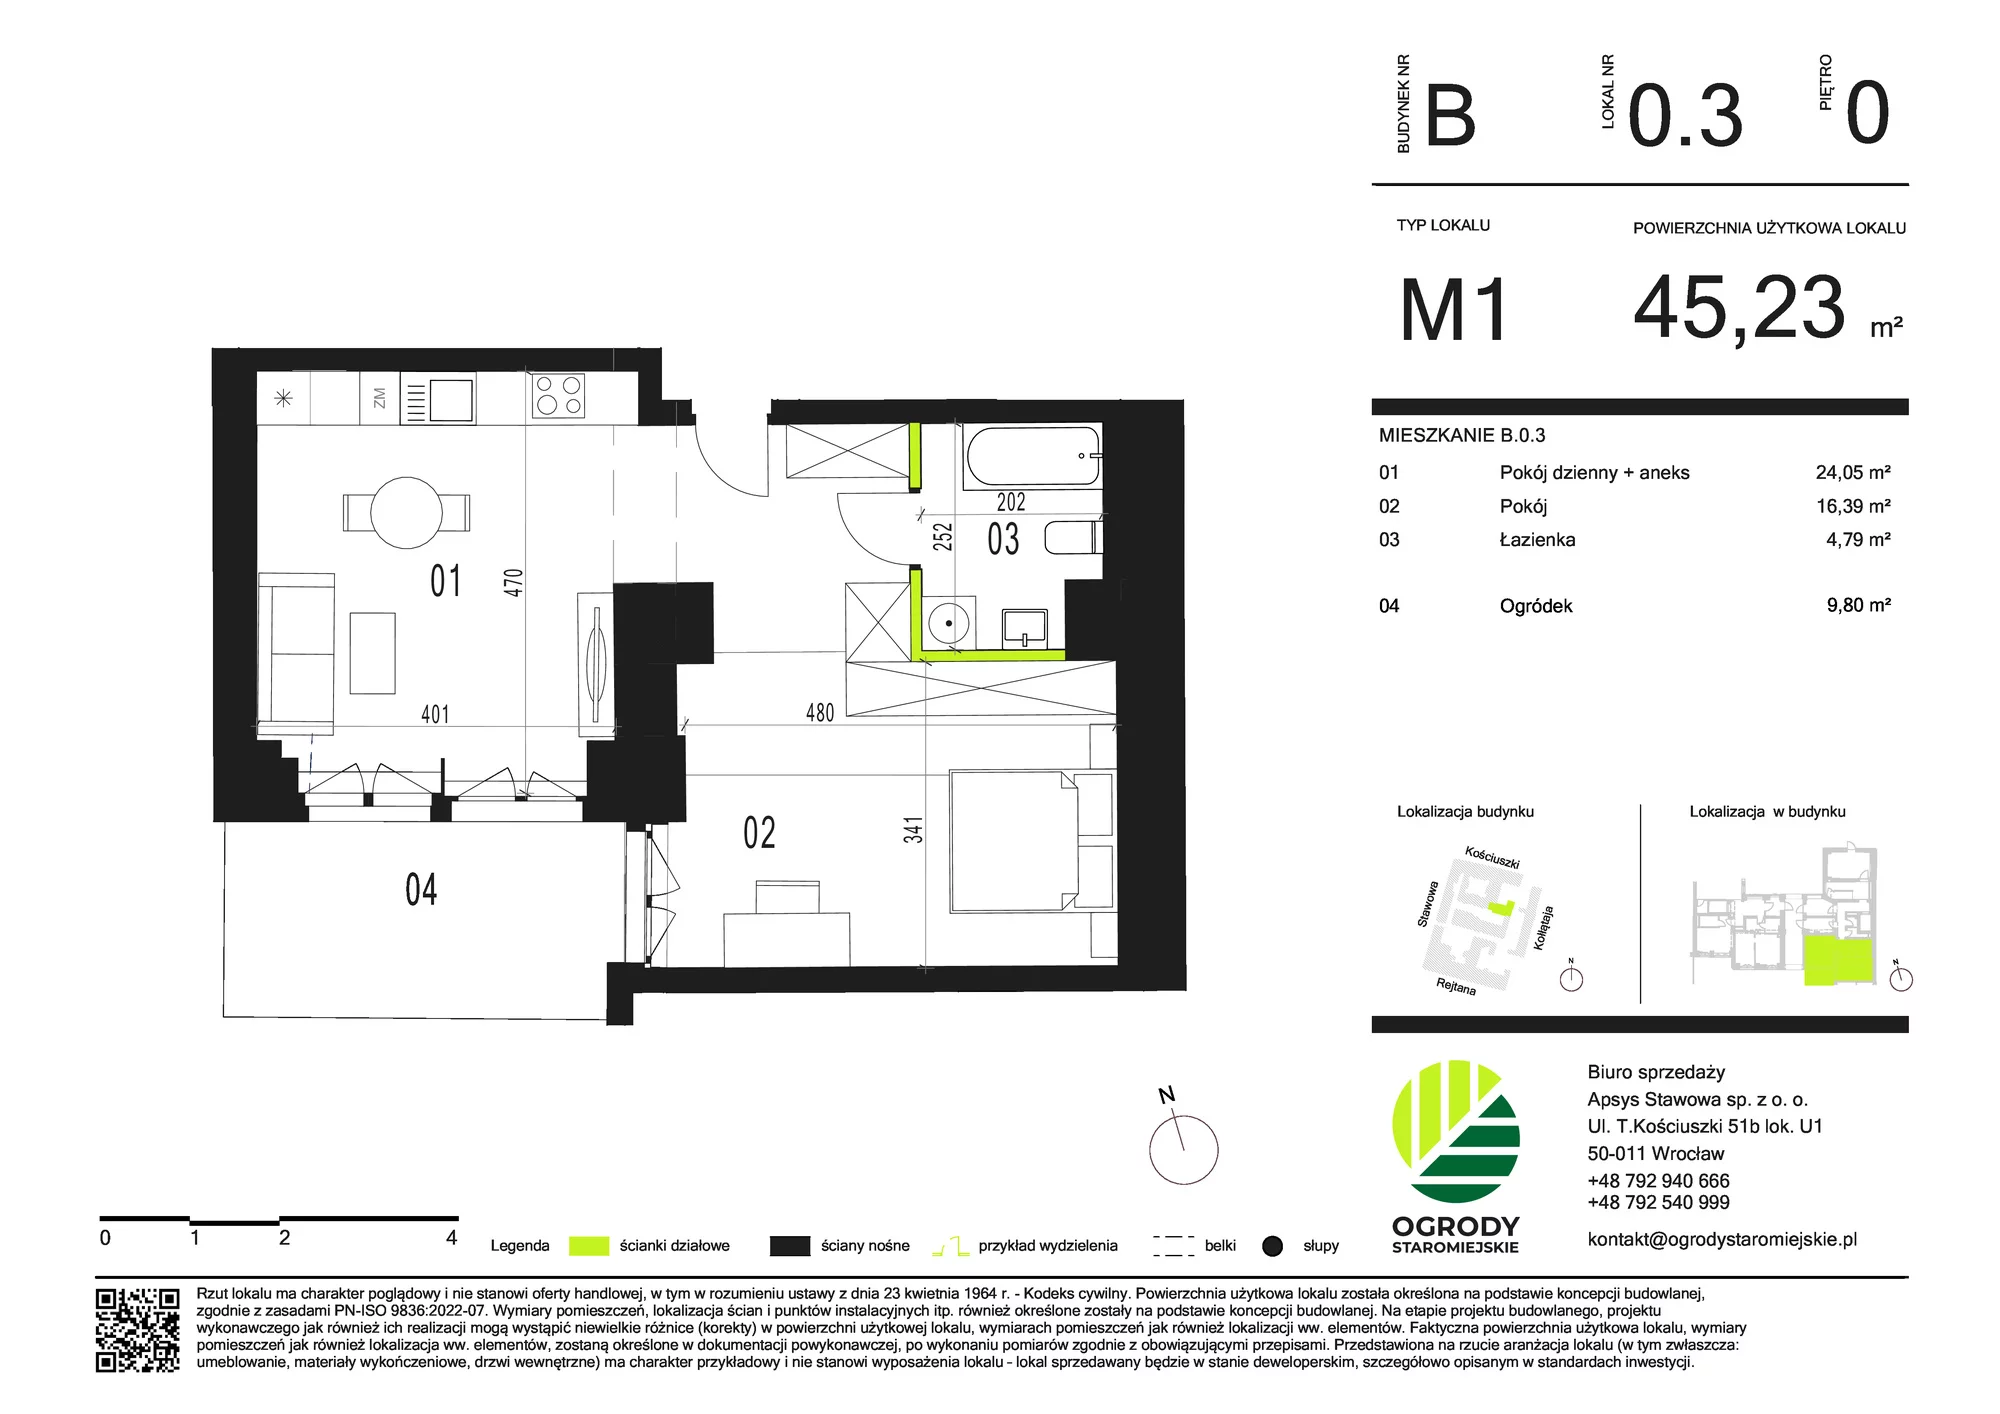 Mieszkanie 45,23 m², parter, oferta nr B.0.3, Ogrody Staromiejskie, Wrocław, Przedmieście Świdnickie, ul. Stawowa 10